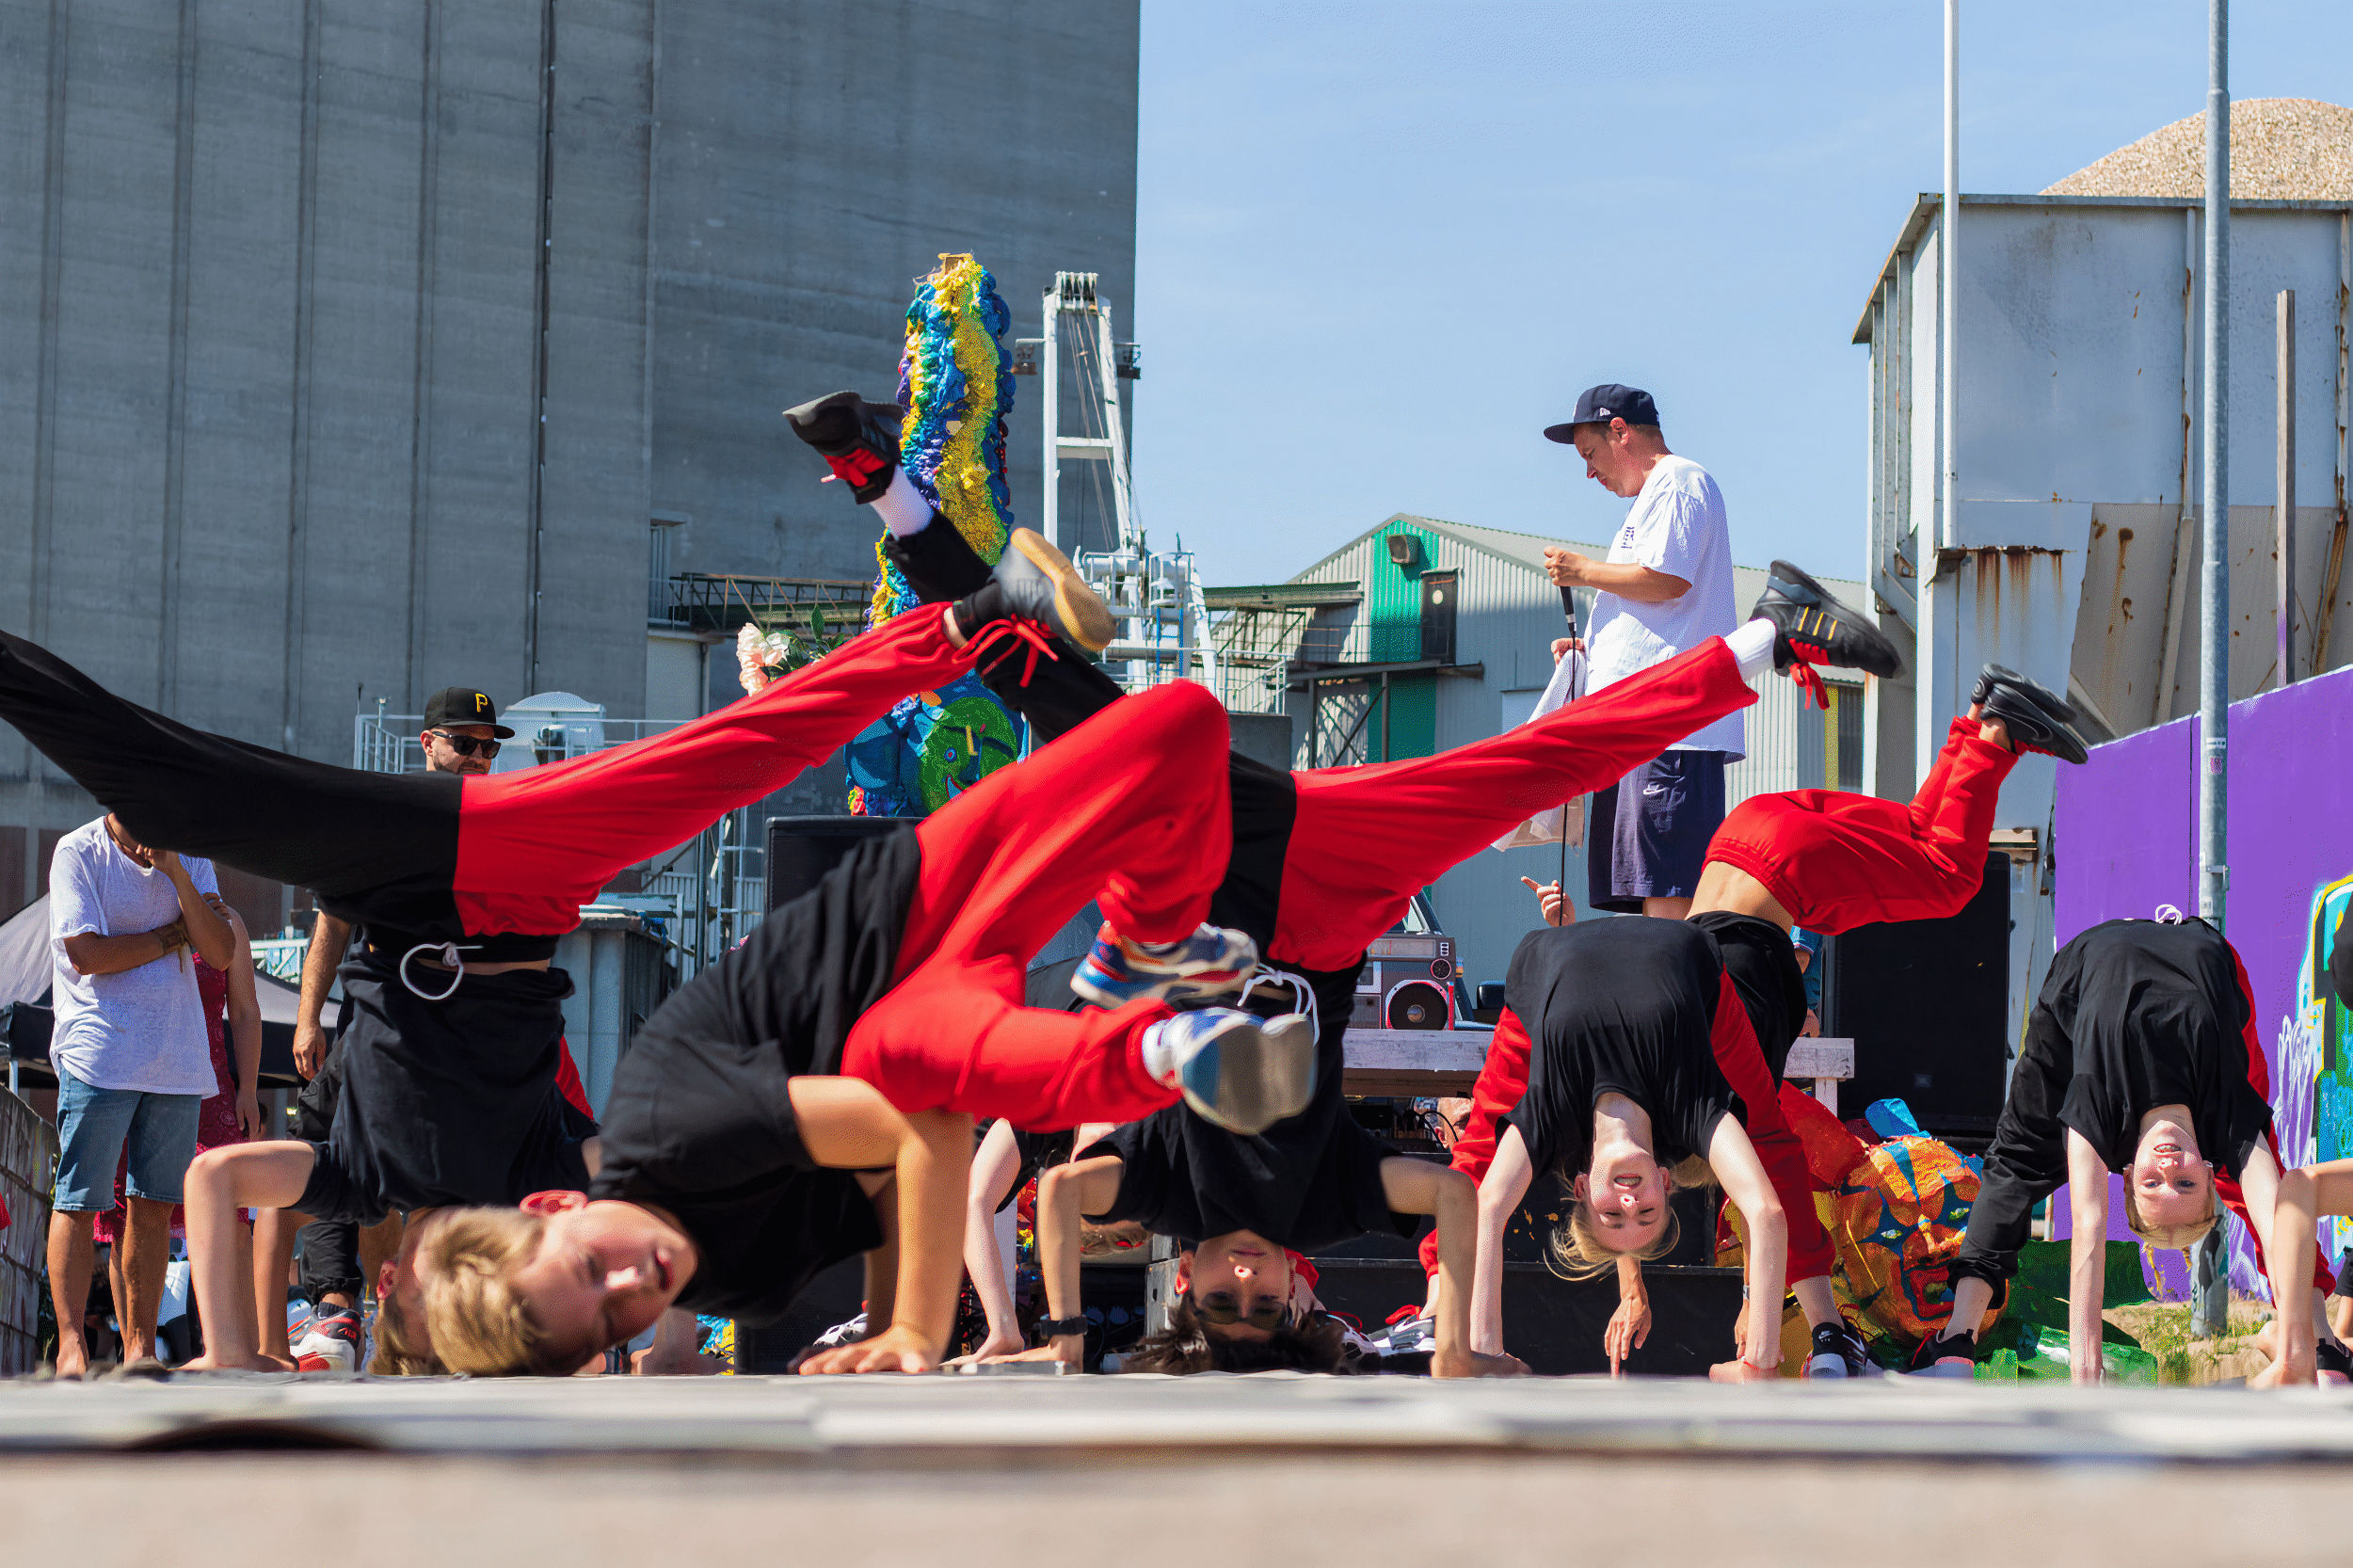 Streetartfestival Aan Hogerwal  breidt uit met breakdance battle